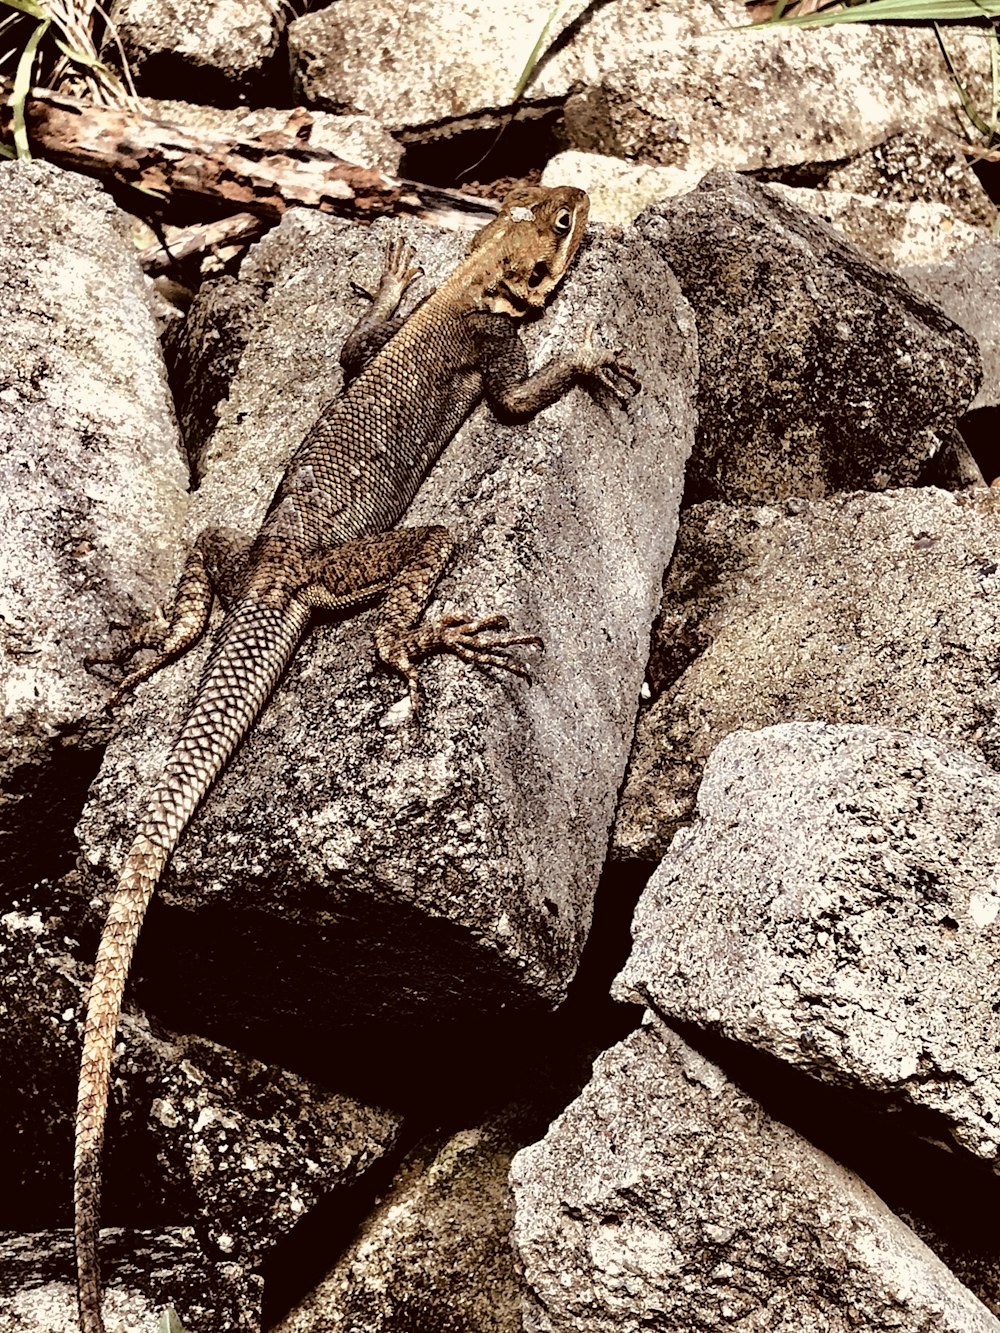 brown lizard on brown rock